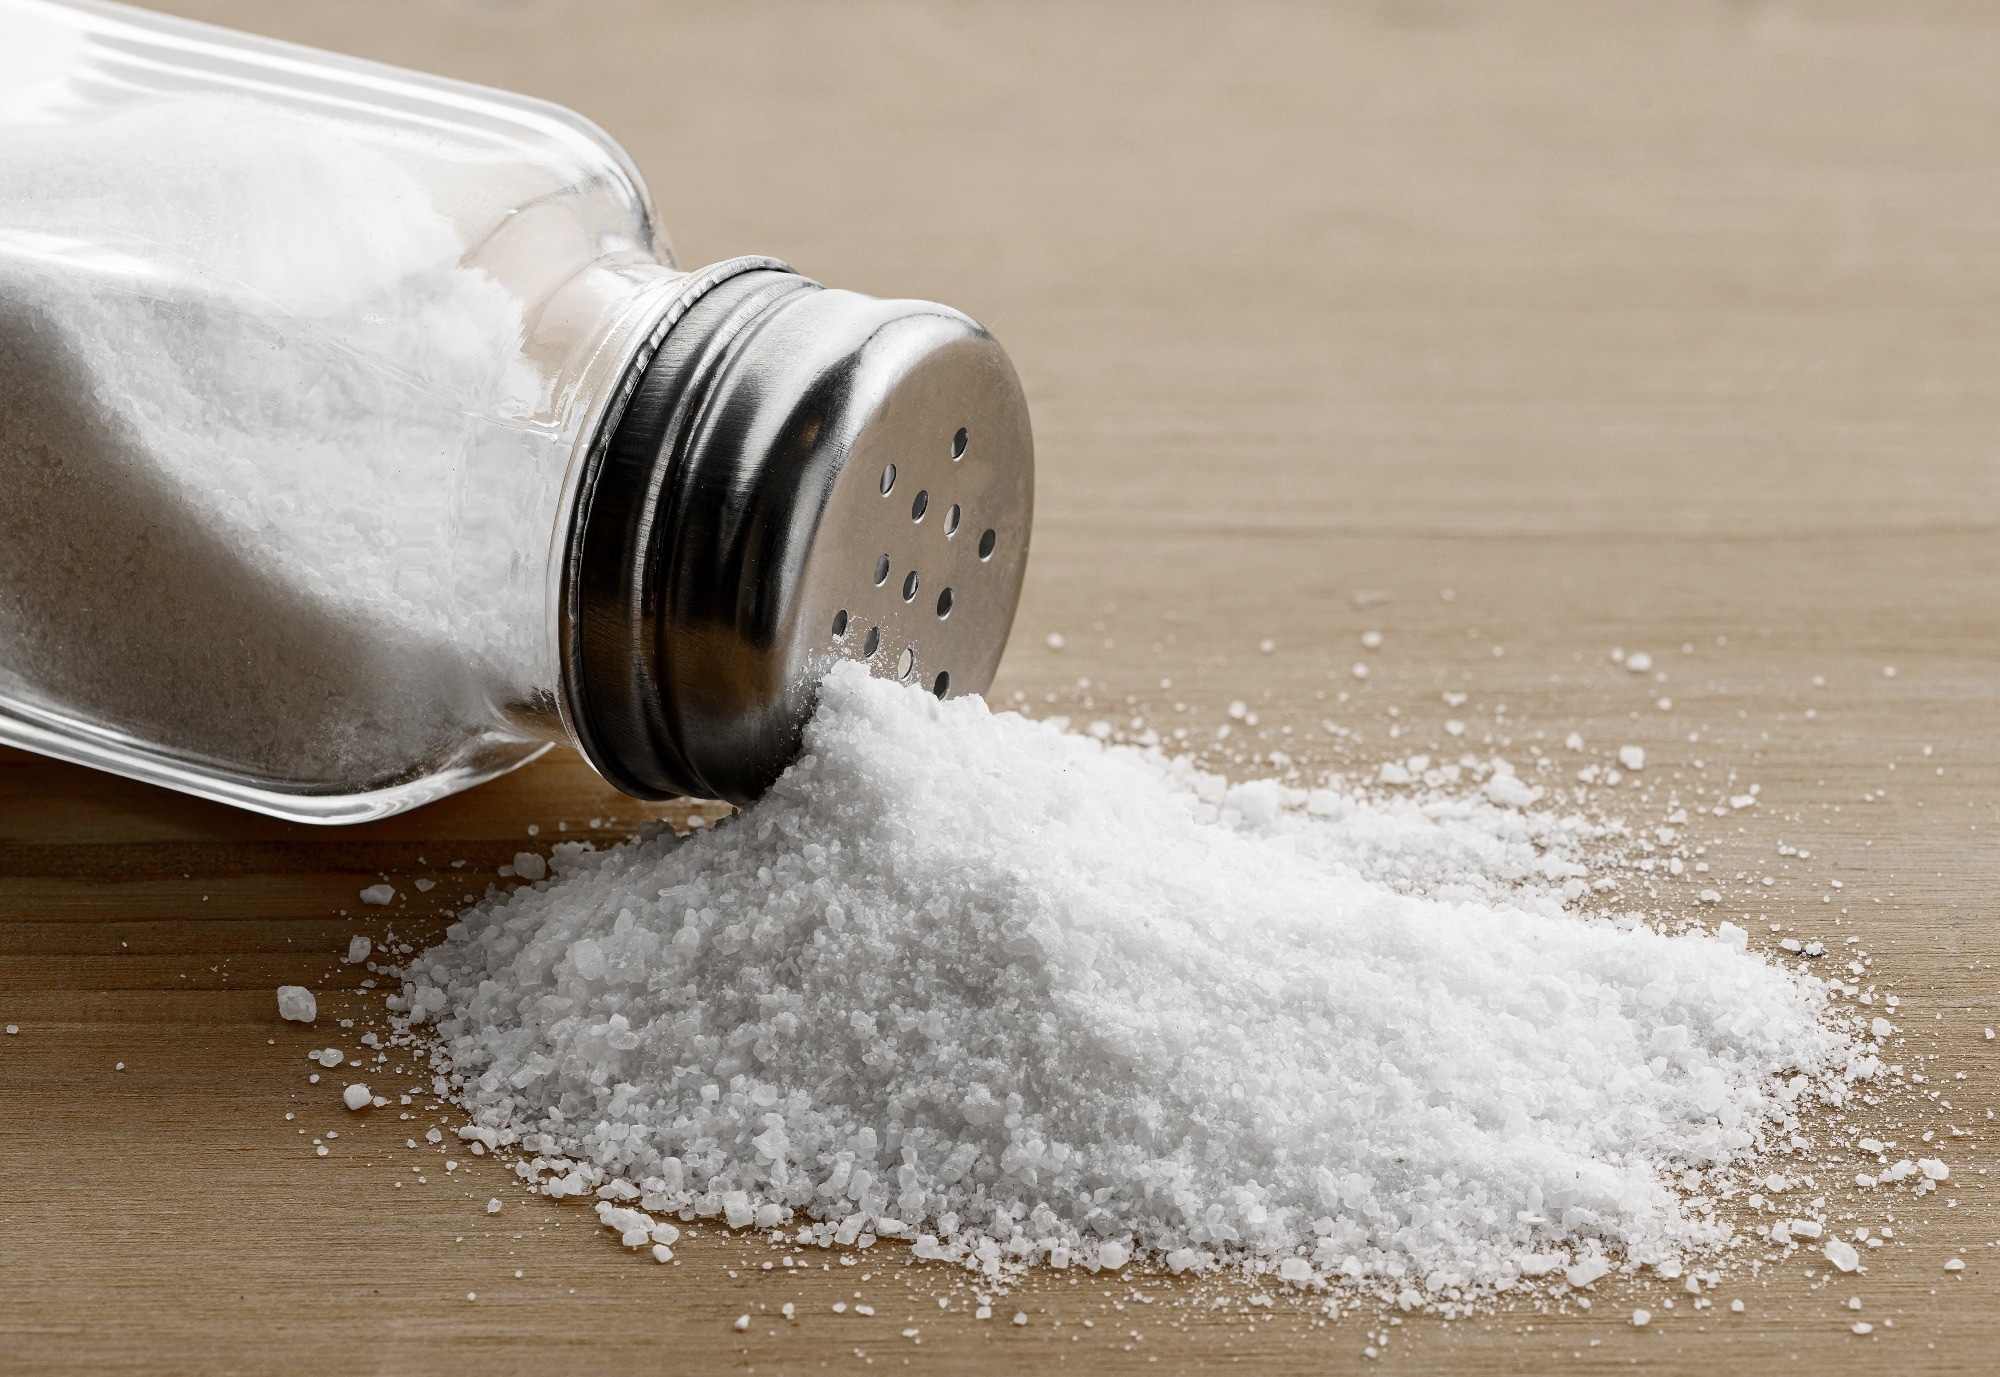 Badanie: Dodawanie soli do potraw przy stole jako wskaźnik ryzyka raka żołądka u dorosłych: badanie prospektywne.  Źródło zdjęcia: Soho A Studio/Shutterstock.com